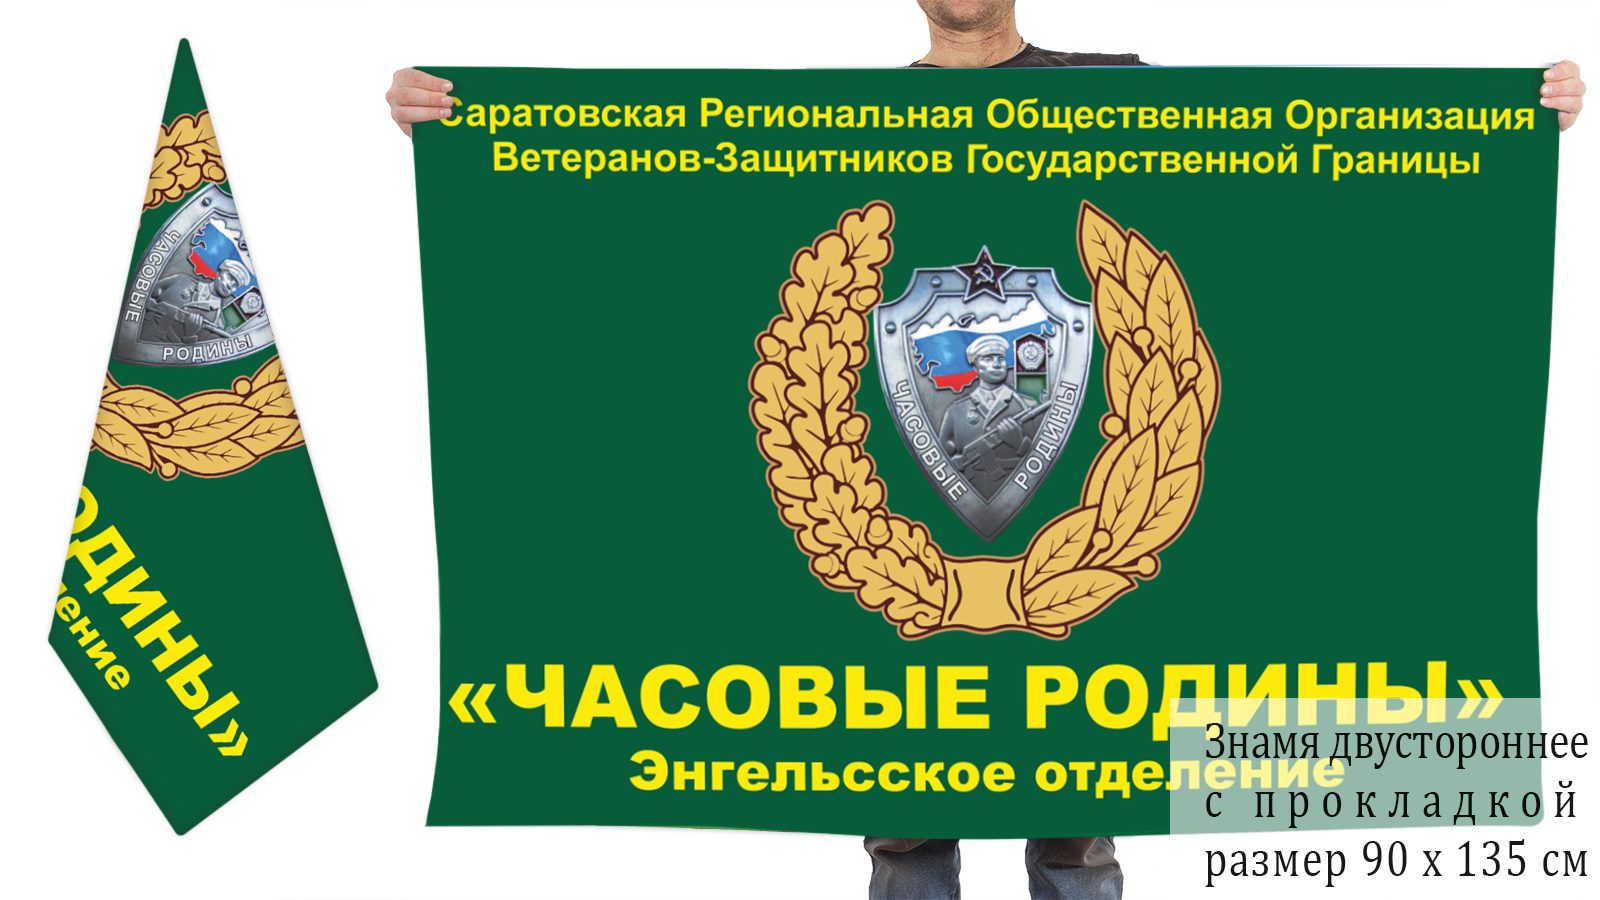 Двусторонний флаг Саратовской Региональной Общественной Организации "Часовые Родины"